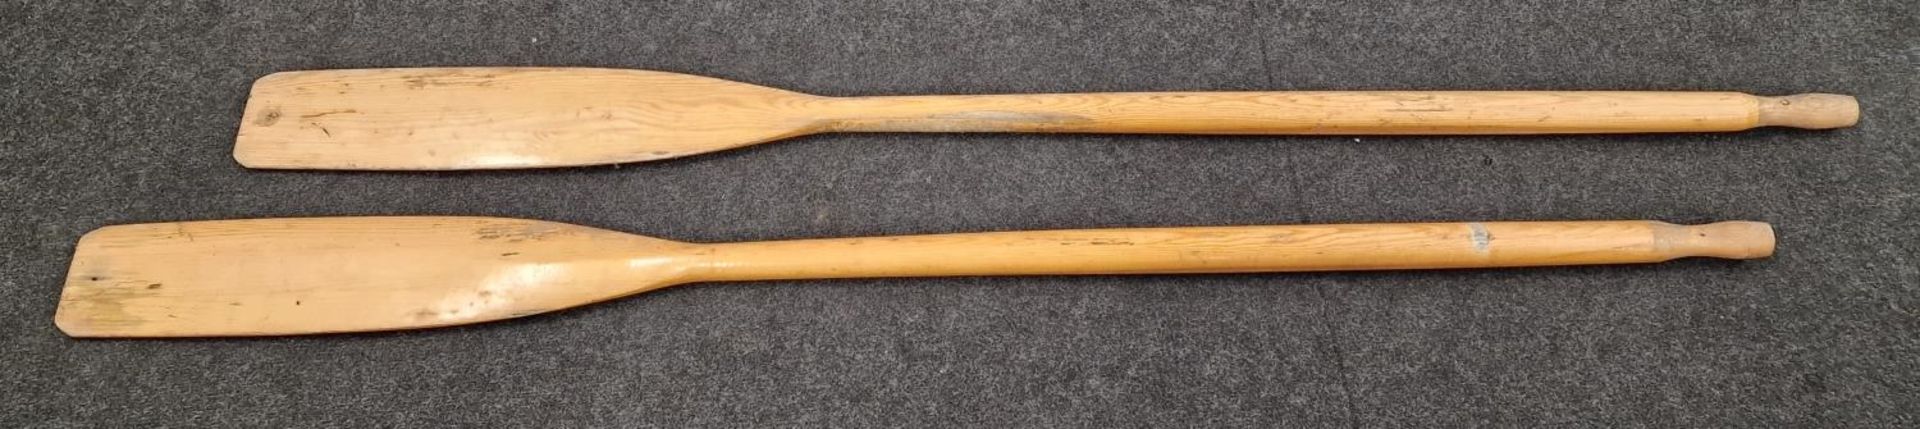 Pair of vintage wooden oars.